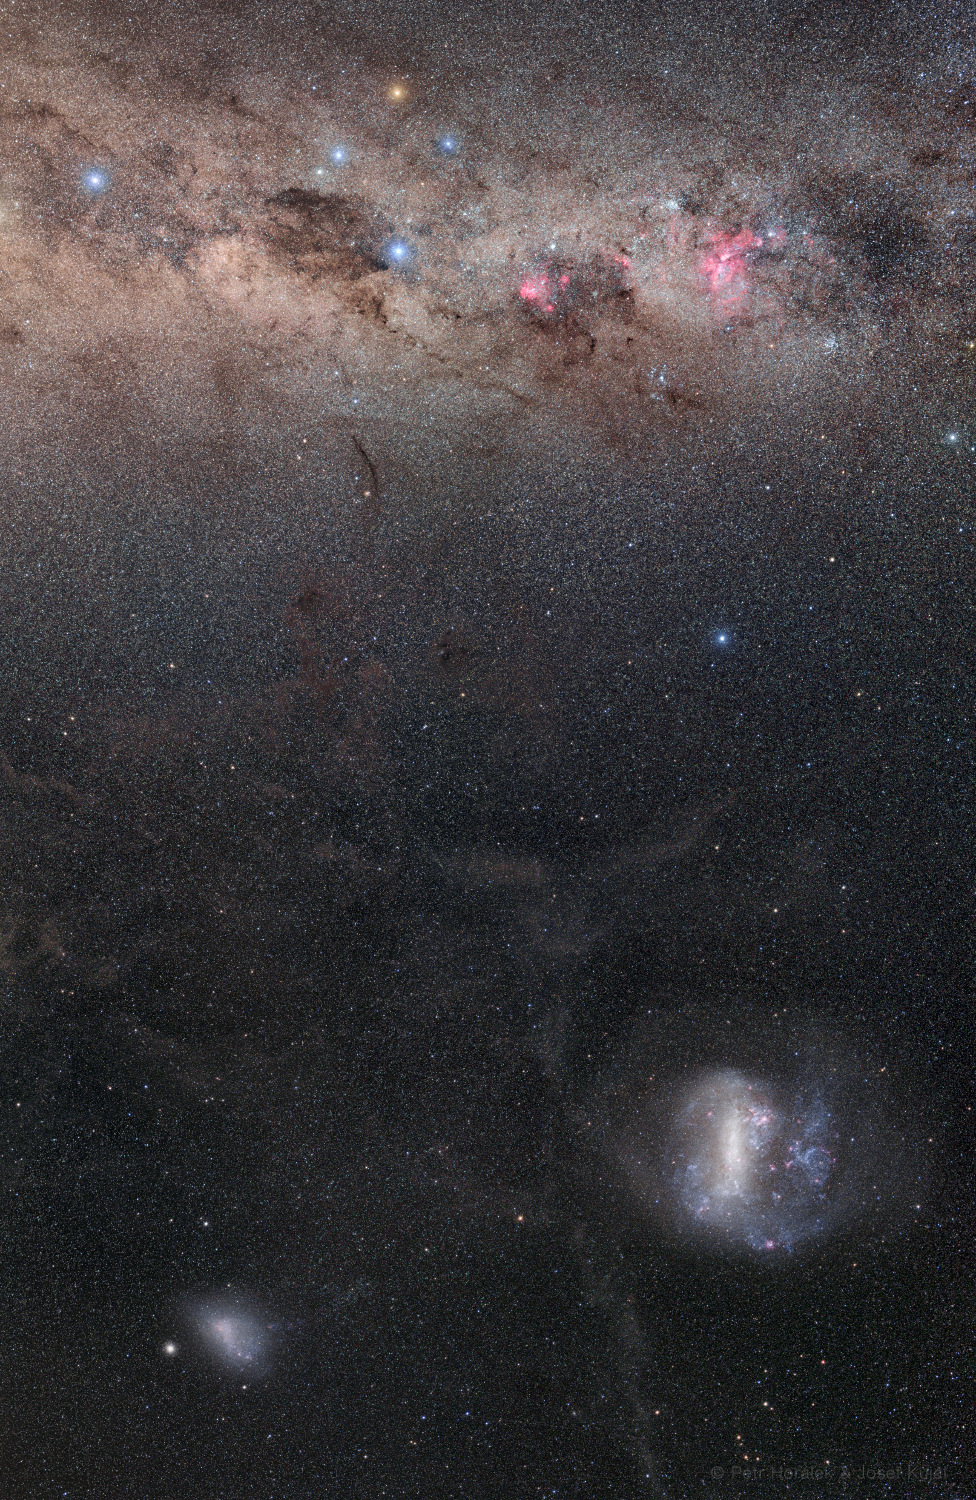 Südhimmelspanorama mit dem Kreuz des Südens in der Milchstraße, den Magellanschen Wolken und Sigma Octantis, der den Himmelssüdpol zeigt.